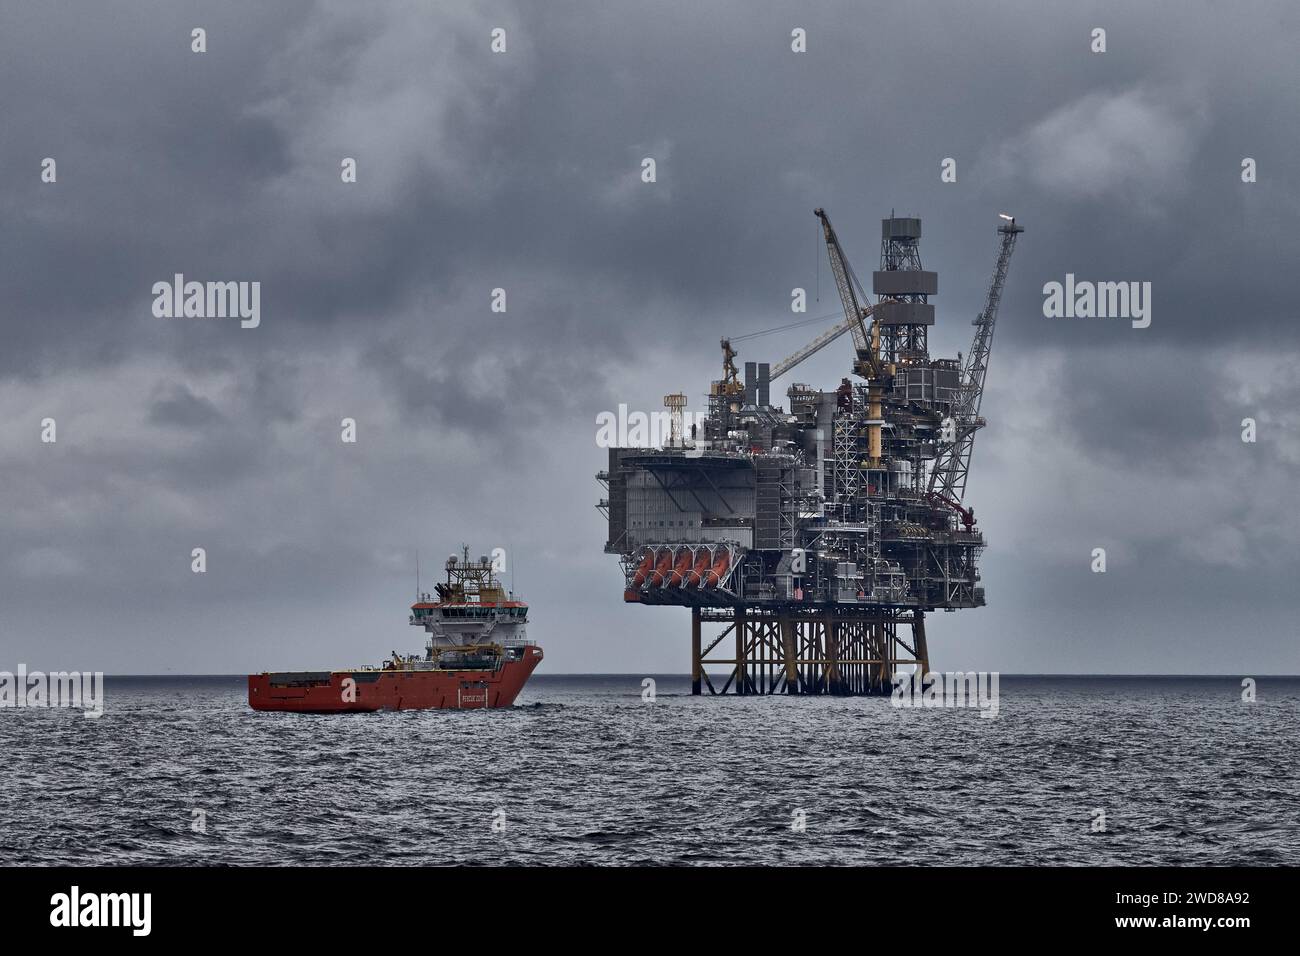 Vue panoramique de la plate-forme de forage Jack Up et du navire ravitailleur par une nuit nuageuse dans la mer. Industrie pétrolière et gazière de la mer du Nord. Banque D'Images